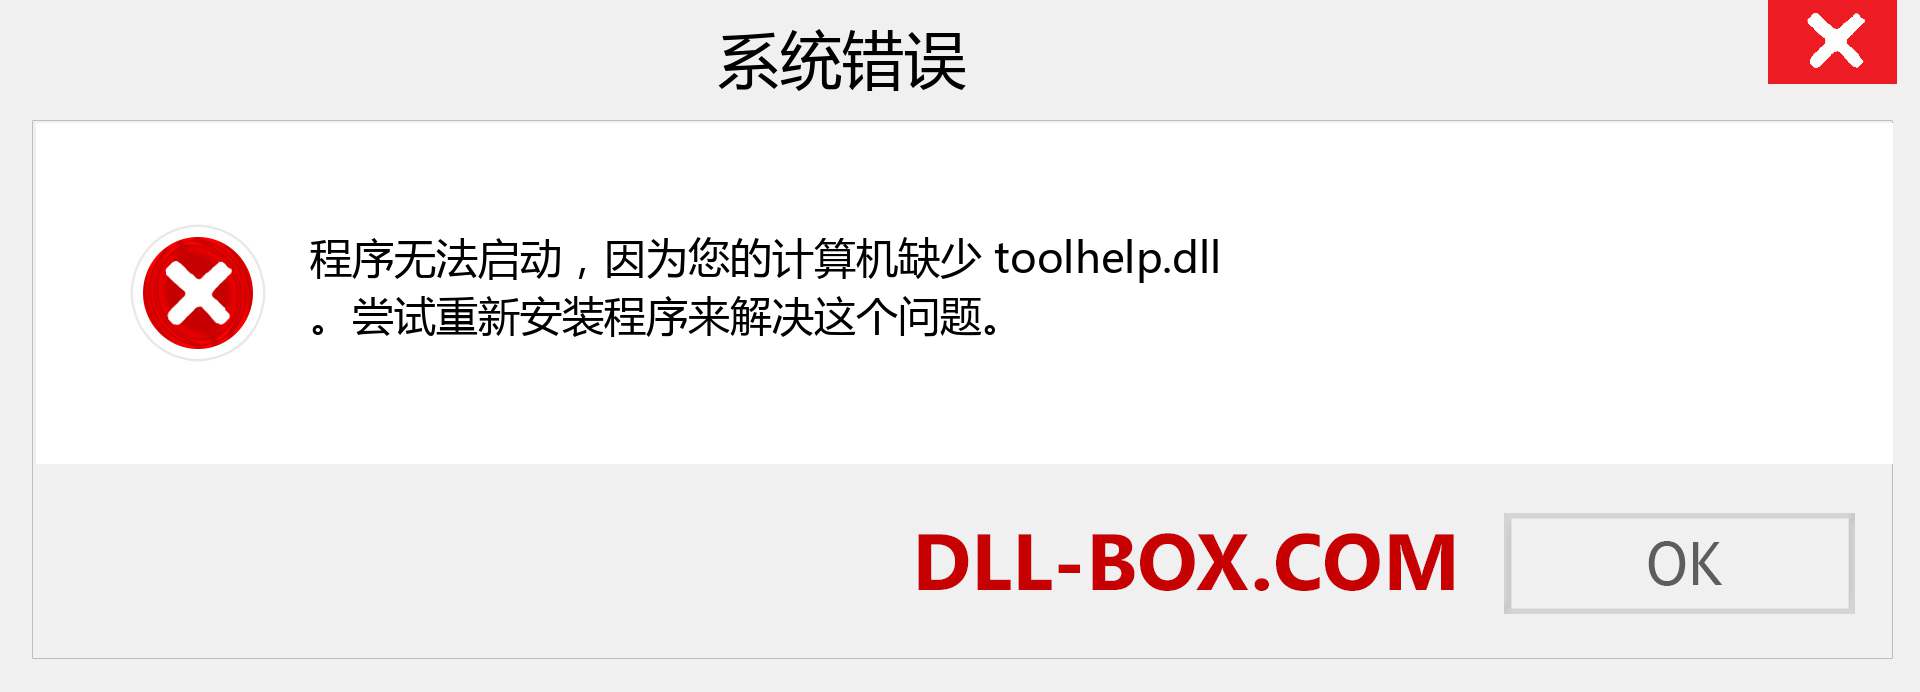 toolhelp.dll 文件丢失？。 适用于 Windows 7、8、10 的下载 - 修复 Windows、照片、图像上的 toolhelp dll 丢失错误